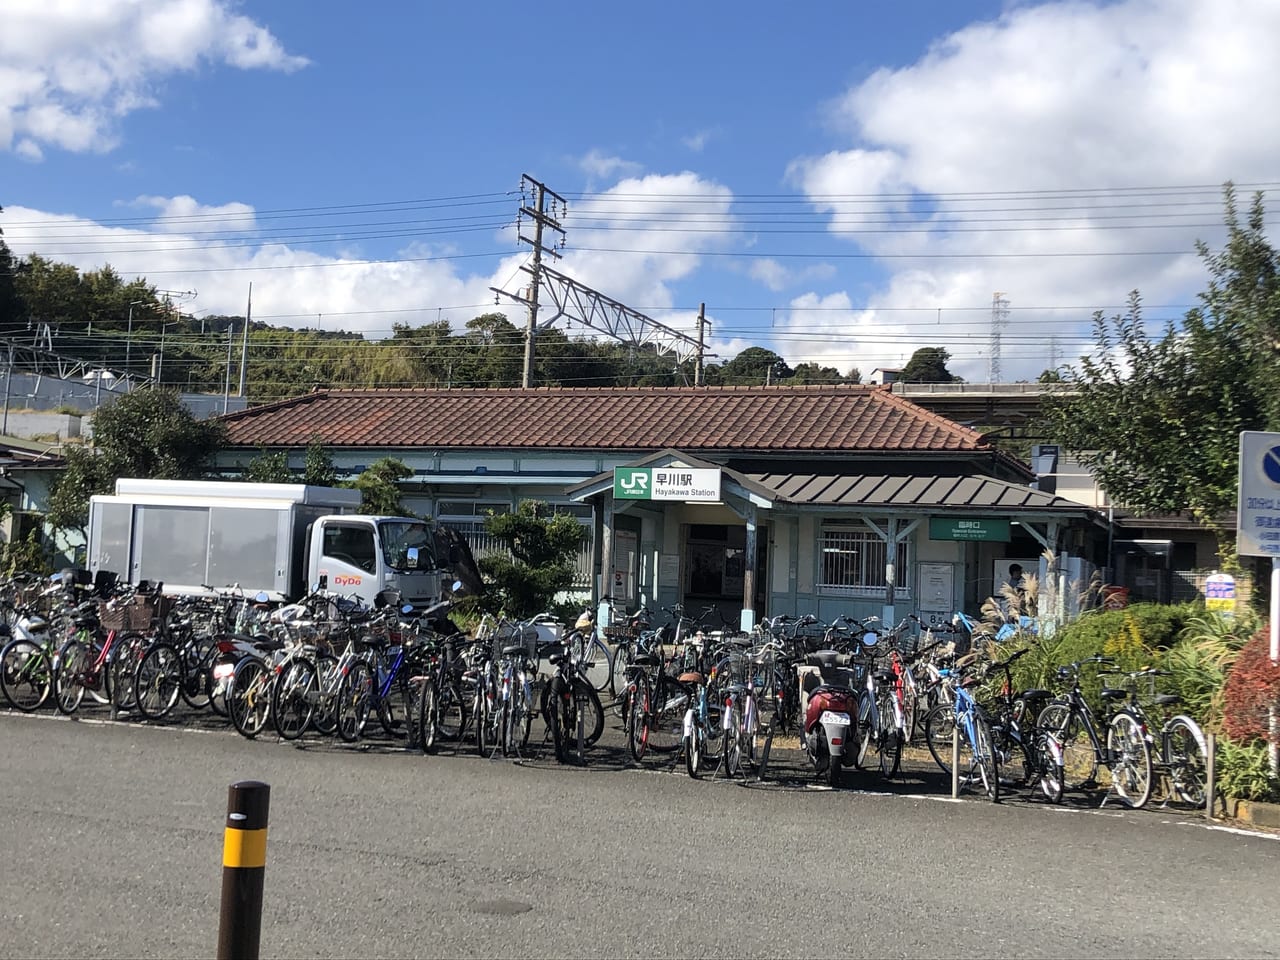 漁港の駅TOTOCO小田原